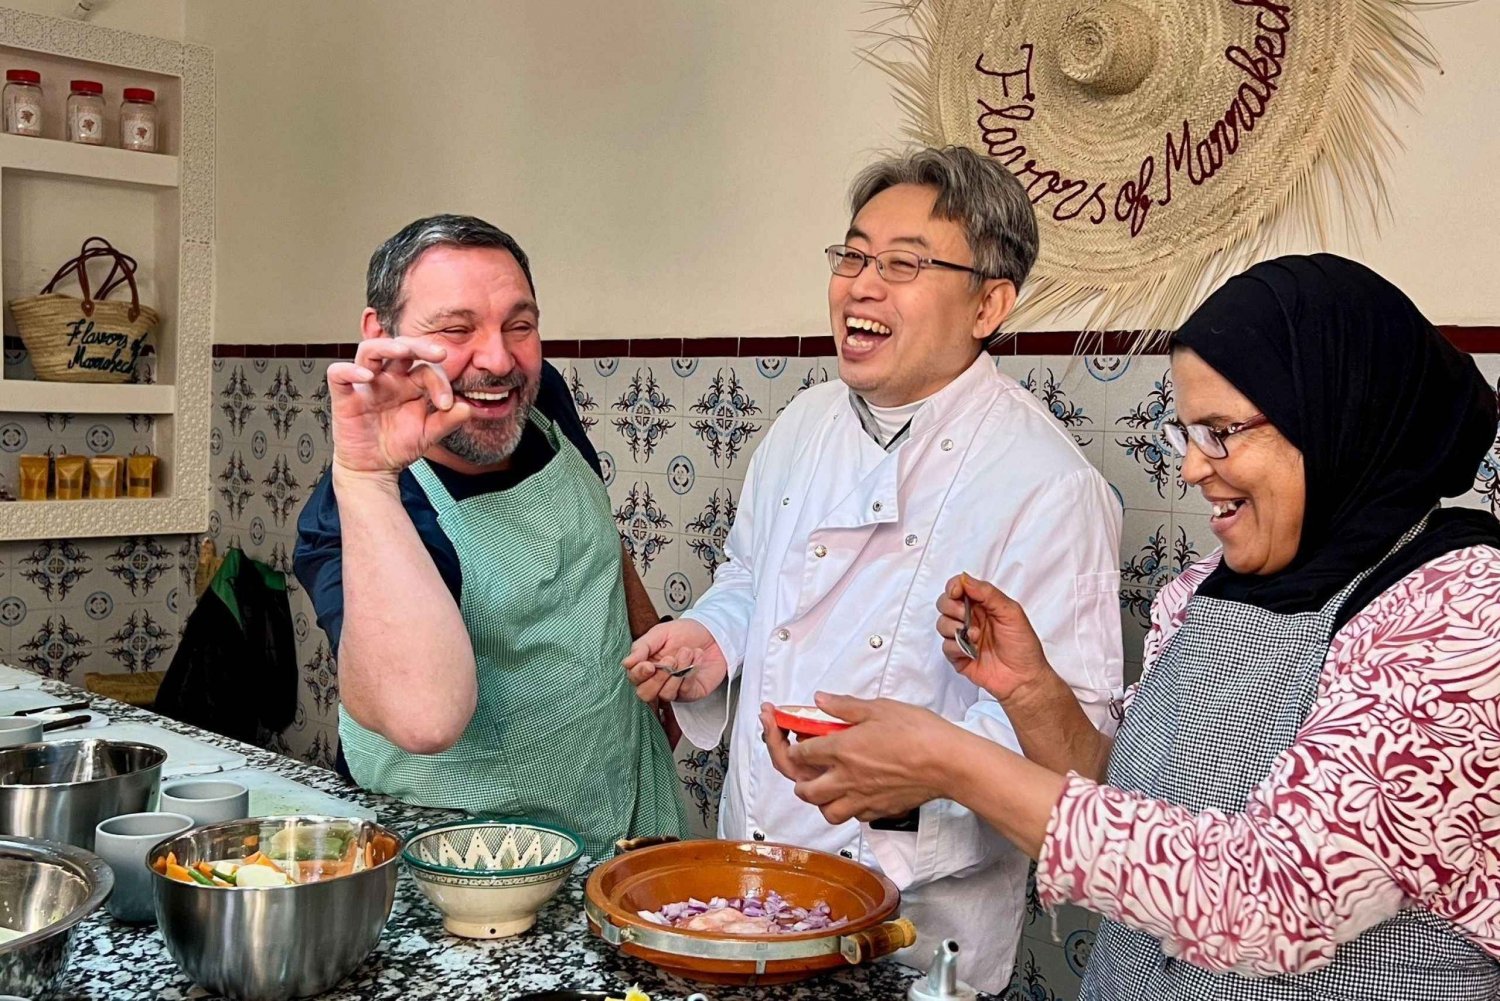 Marrakech: Corso di cucina marocchina con visita al mercato e pranzo